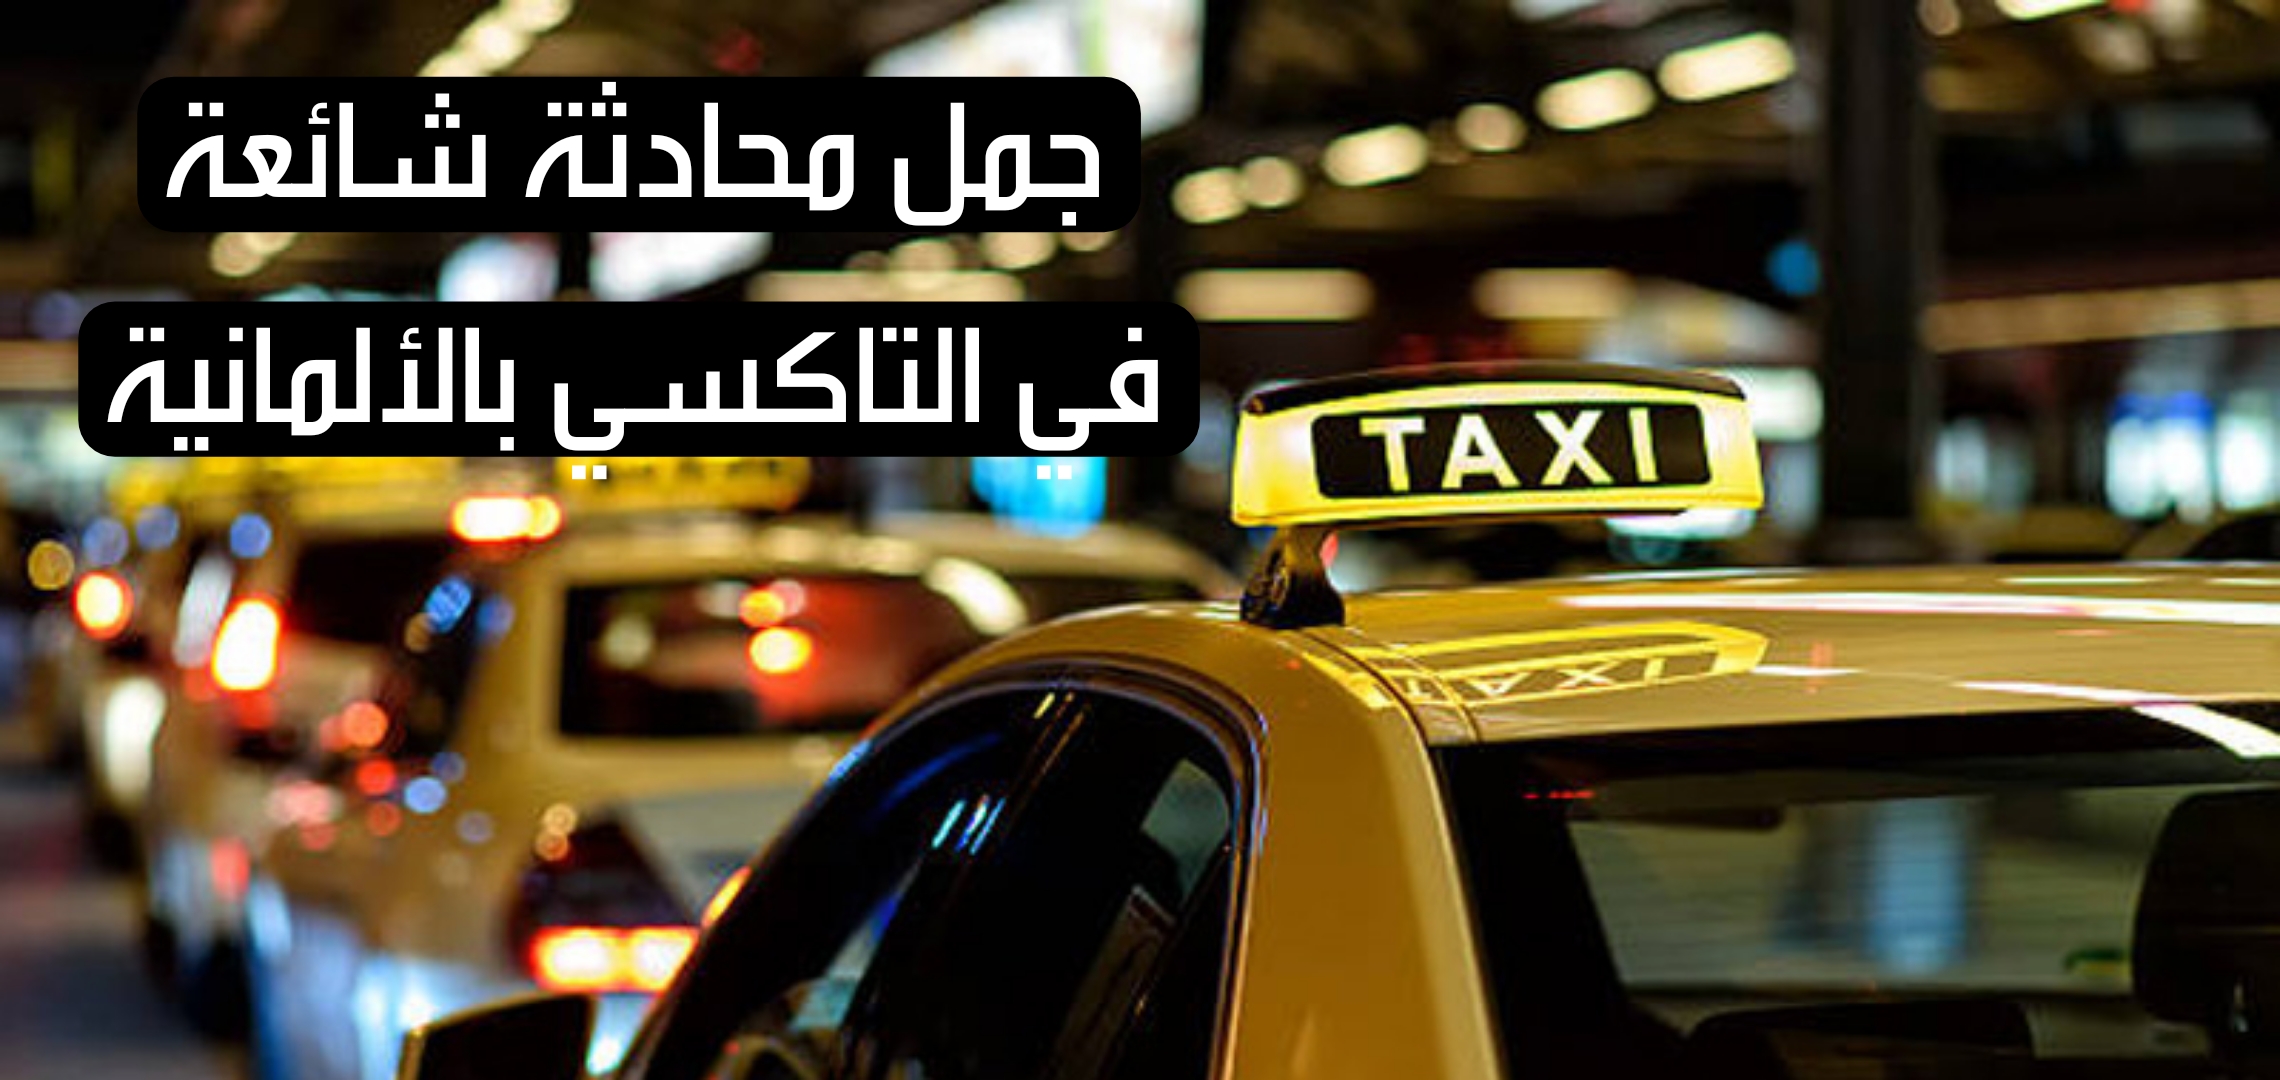 جمل محادثة شائعة في التاكسي بالألمانية